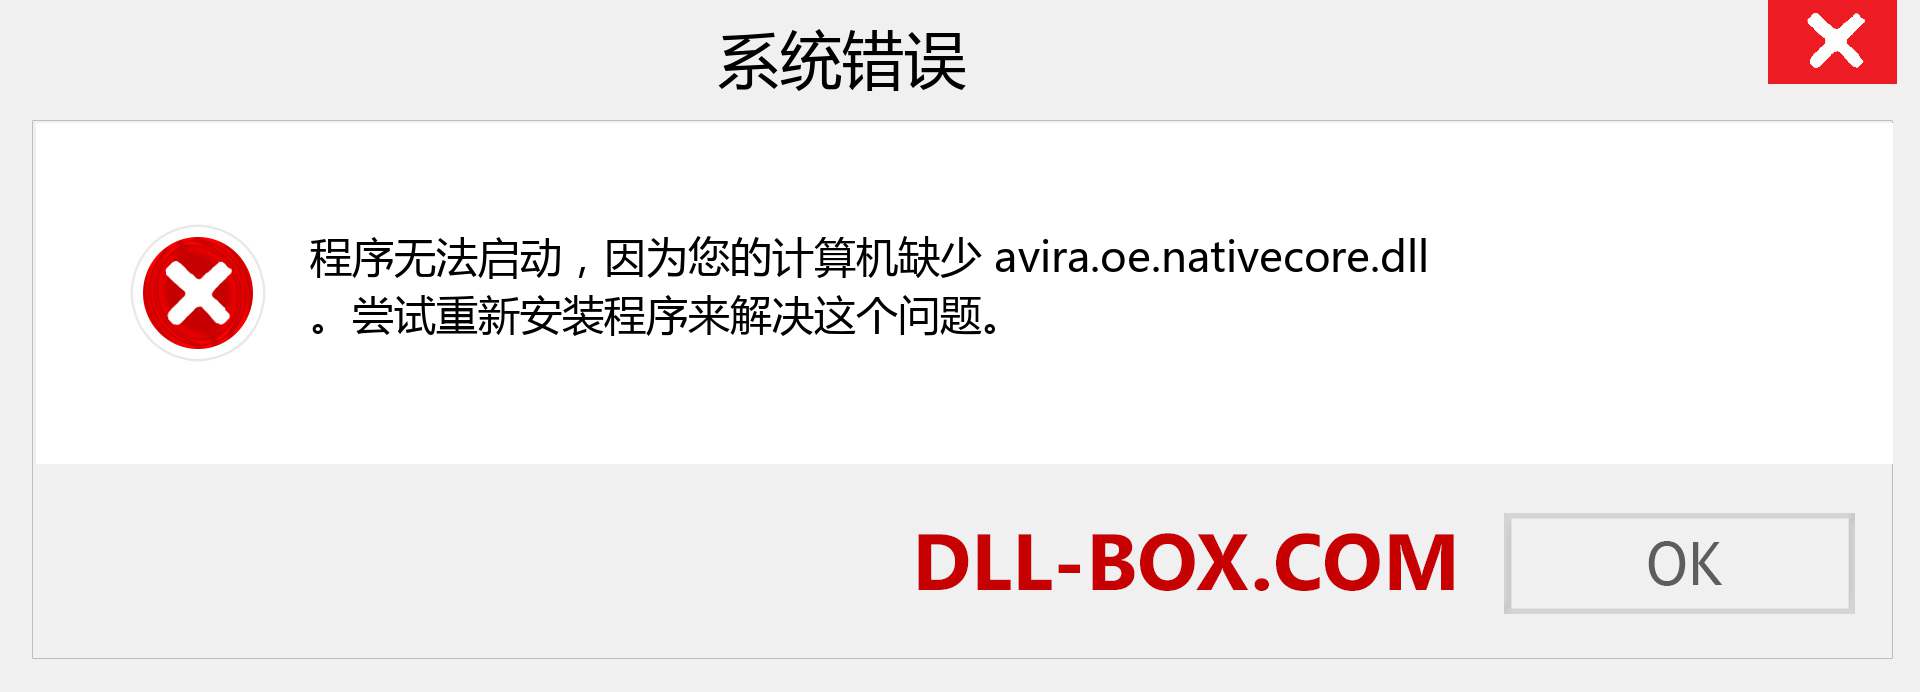 avira.oe.nativecore.dll 文件丢失？。 适用于 Windows 7、8、10 的下载 - 修复 Windows、照片、图像上的 avira.oe.nativecore dll 丢失错误